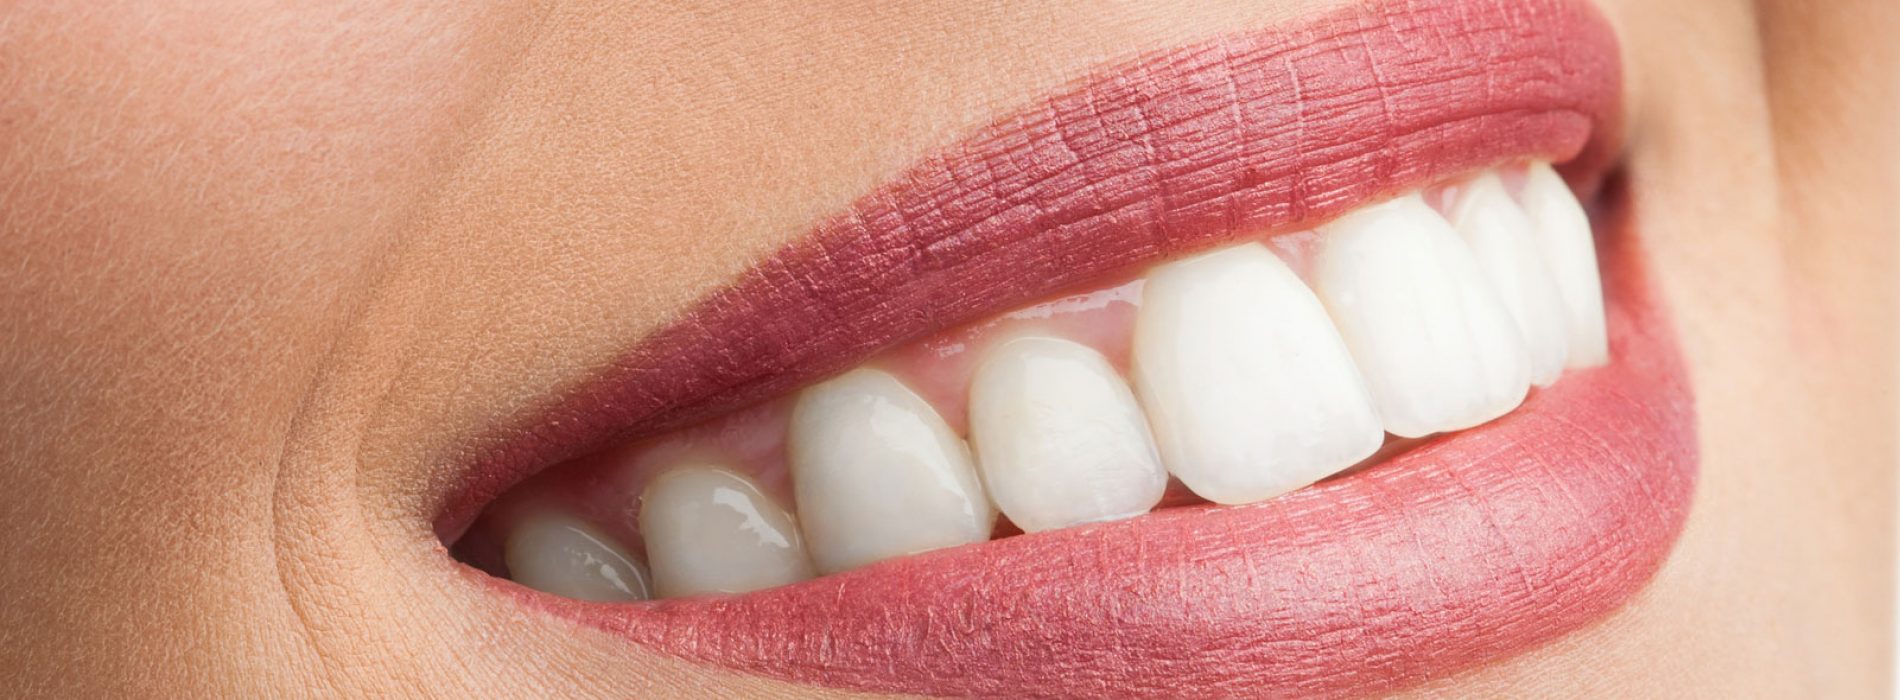 GIFTIGE GLIMLACH: schadelijke tandpasta-ingrediënten die in verband worden gebracht met een verhoogd risico op kanker